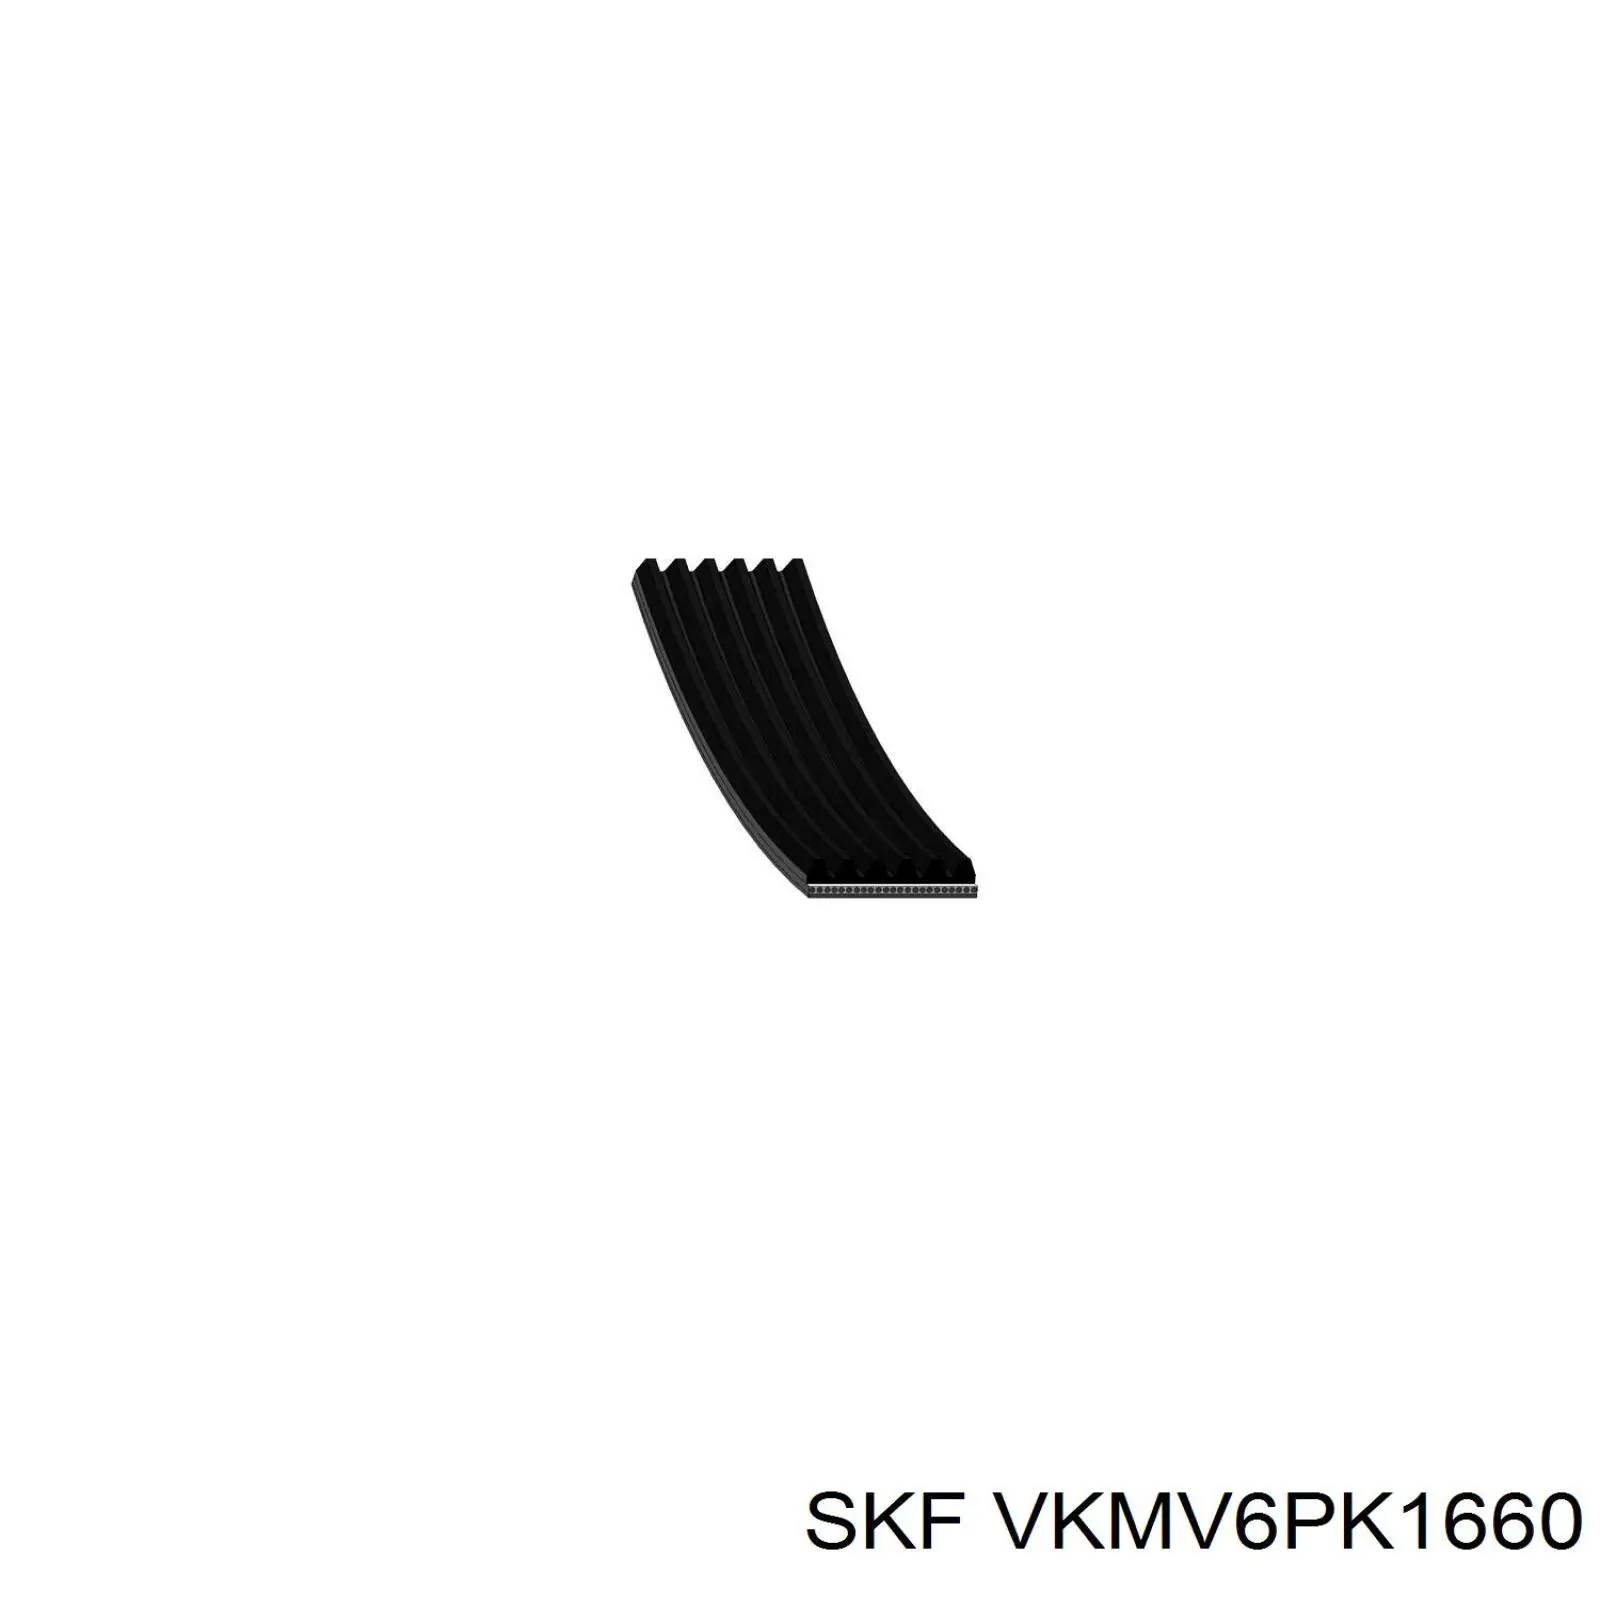 VKMV6PK1660 SKF correa trapezoidal